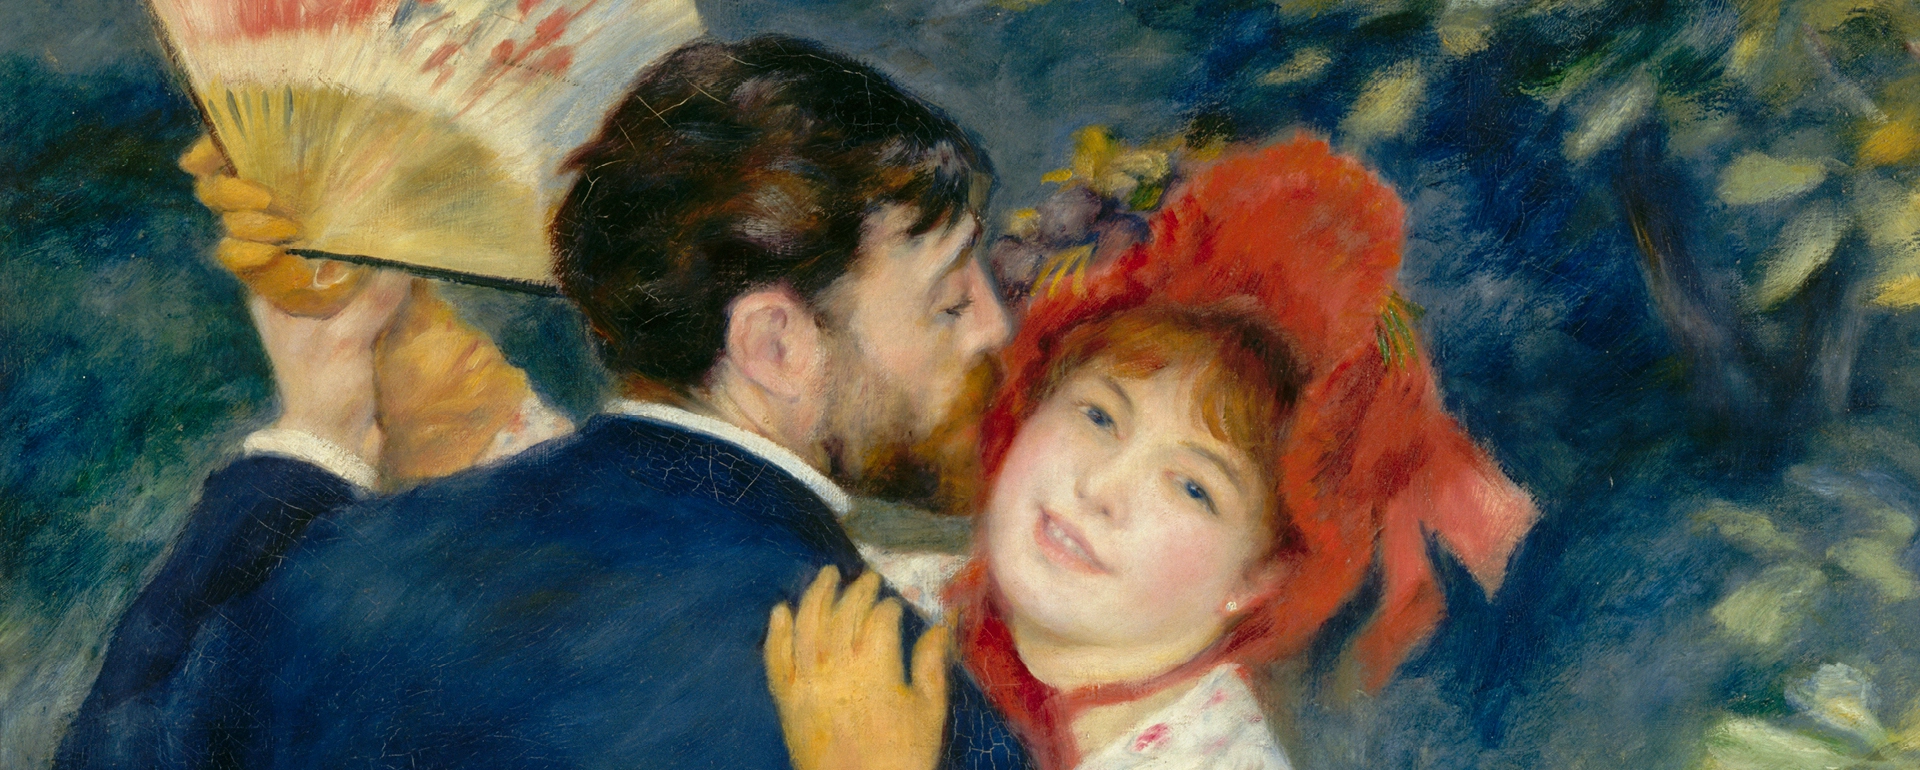 Már megveheted a jegyed az őszi Renoir-kiállításra a Szépművészeti Múzeumba